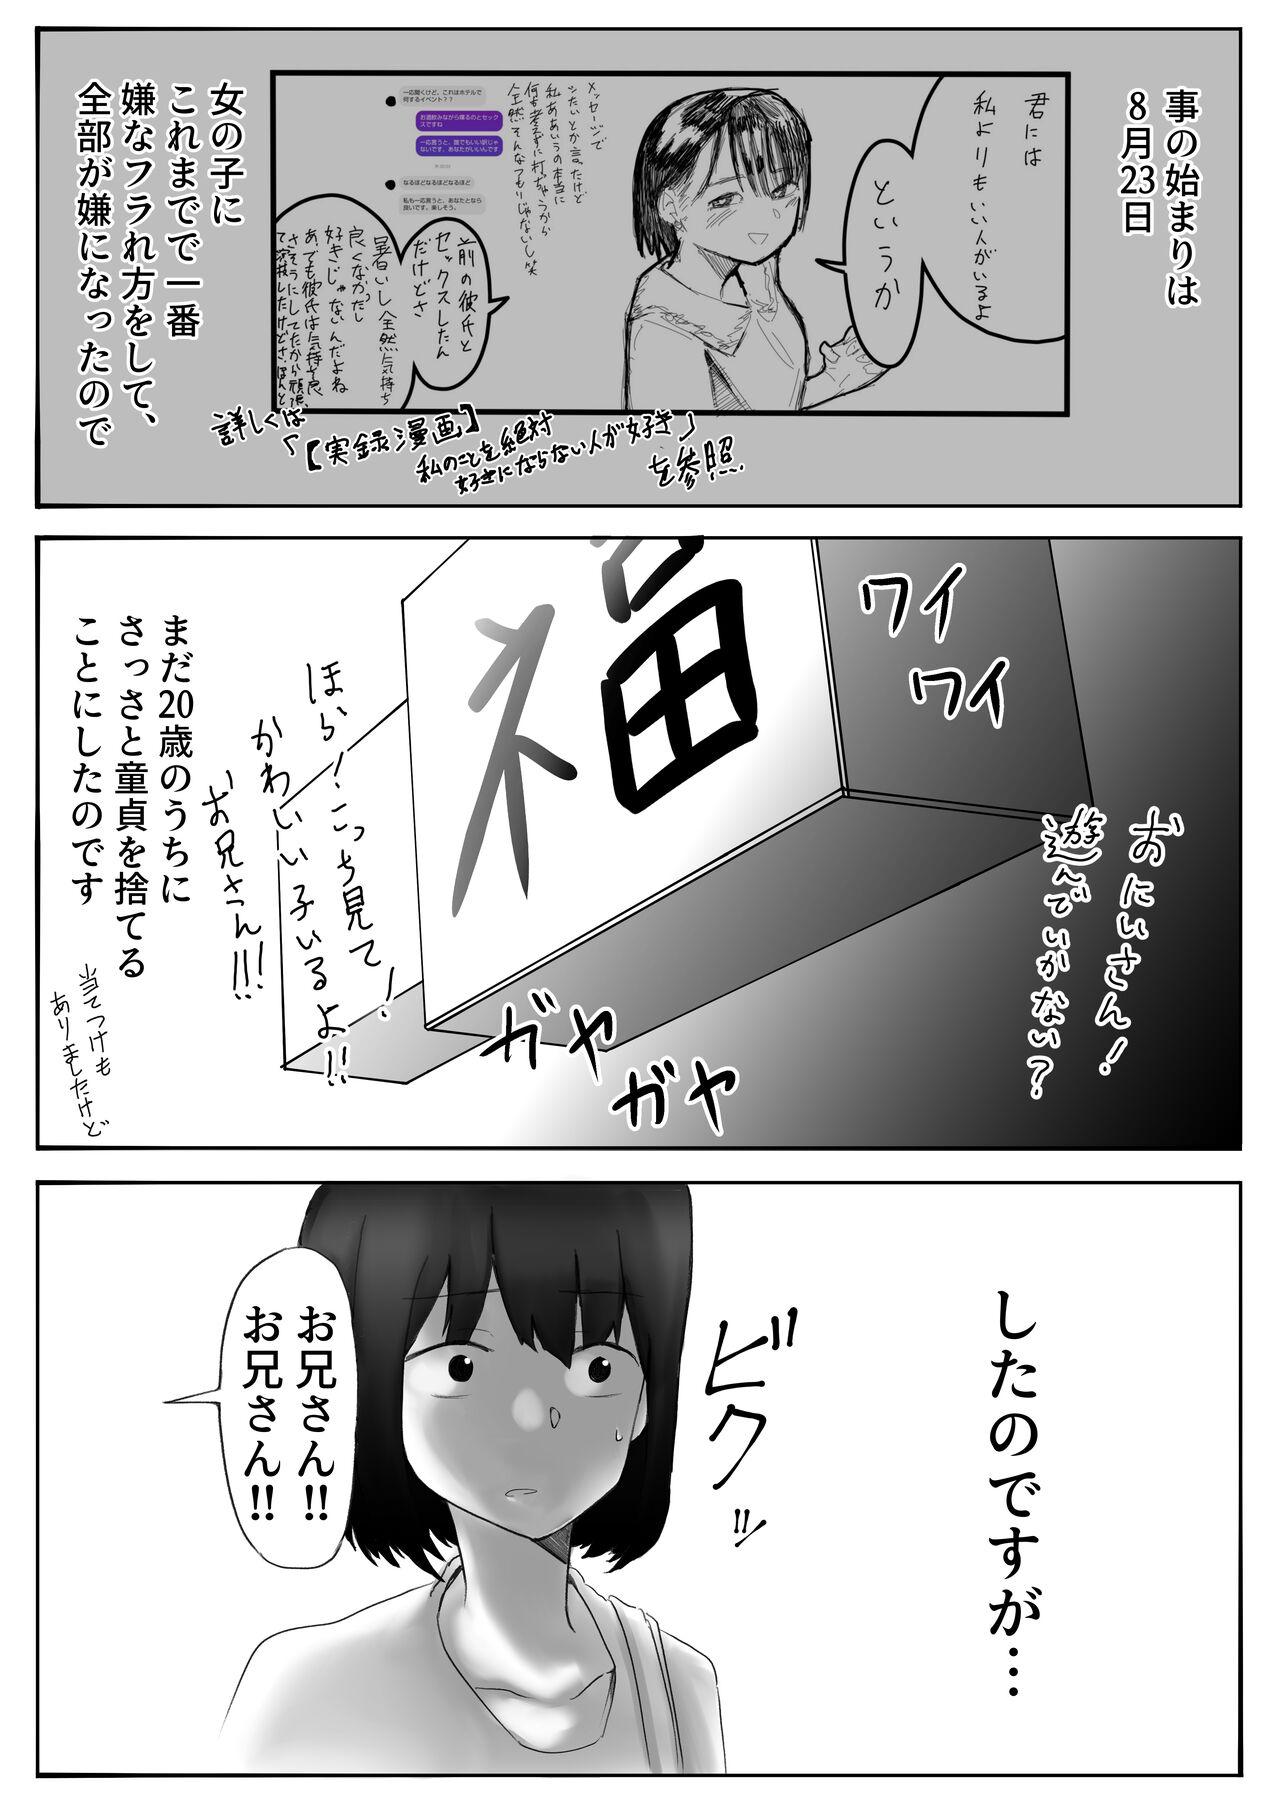 【風俗レポ漫画】飛田新地で童貞を捨てた話 2